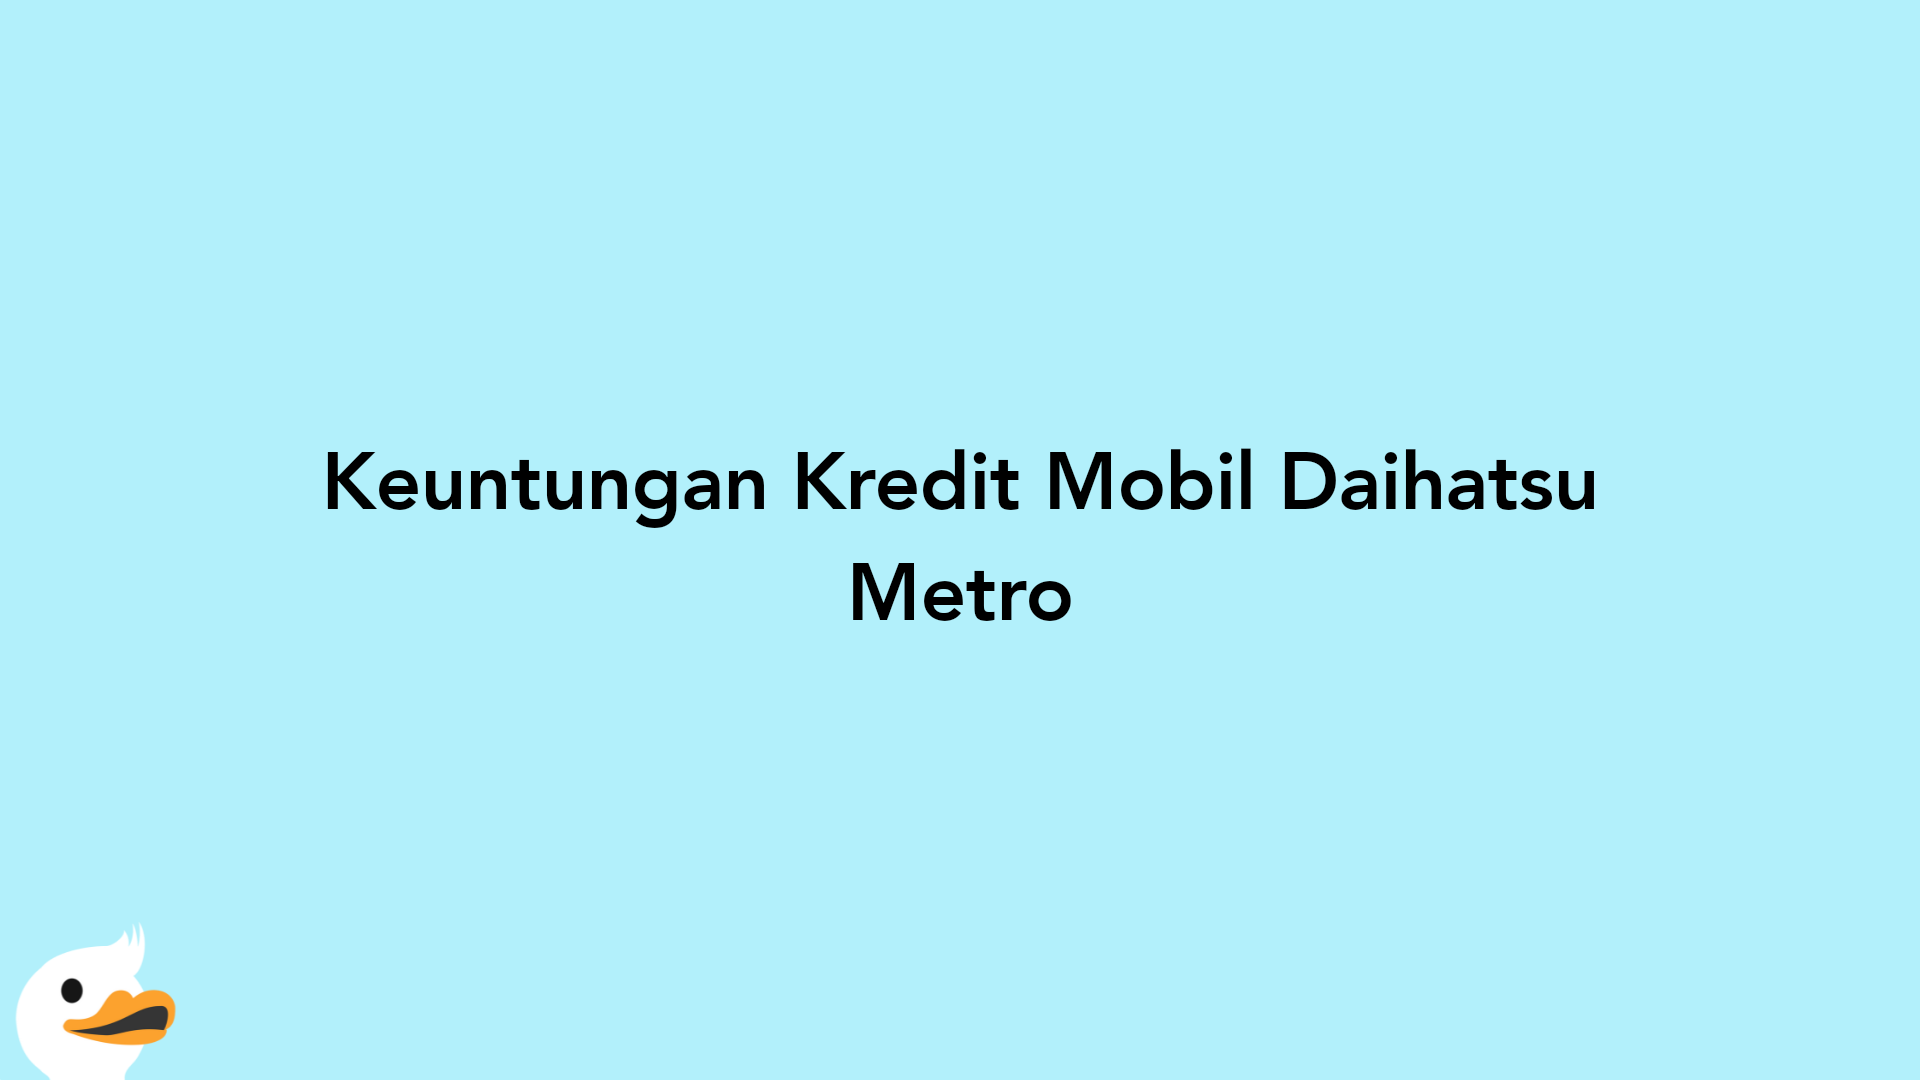 Keuntungan Kredit Mobil Daihatsu Metro